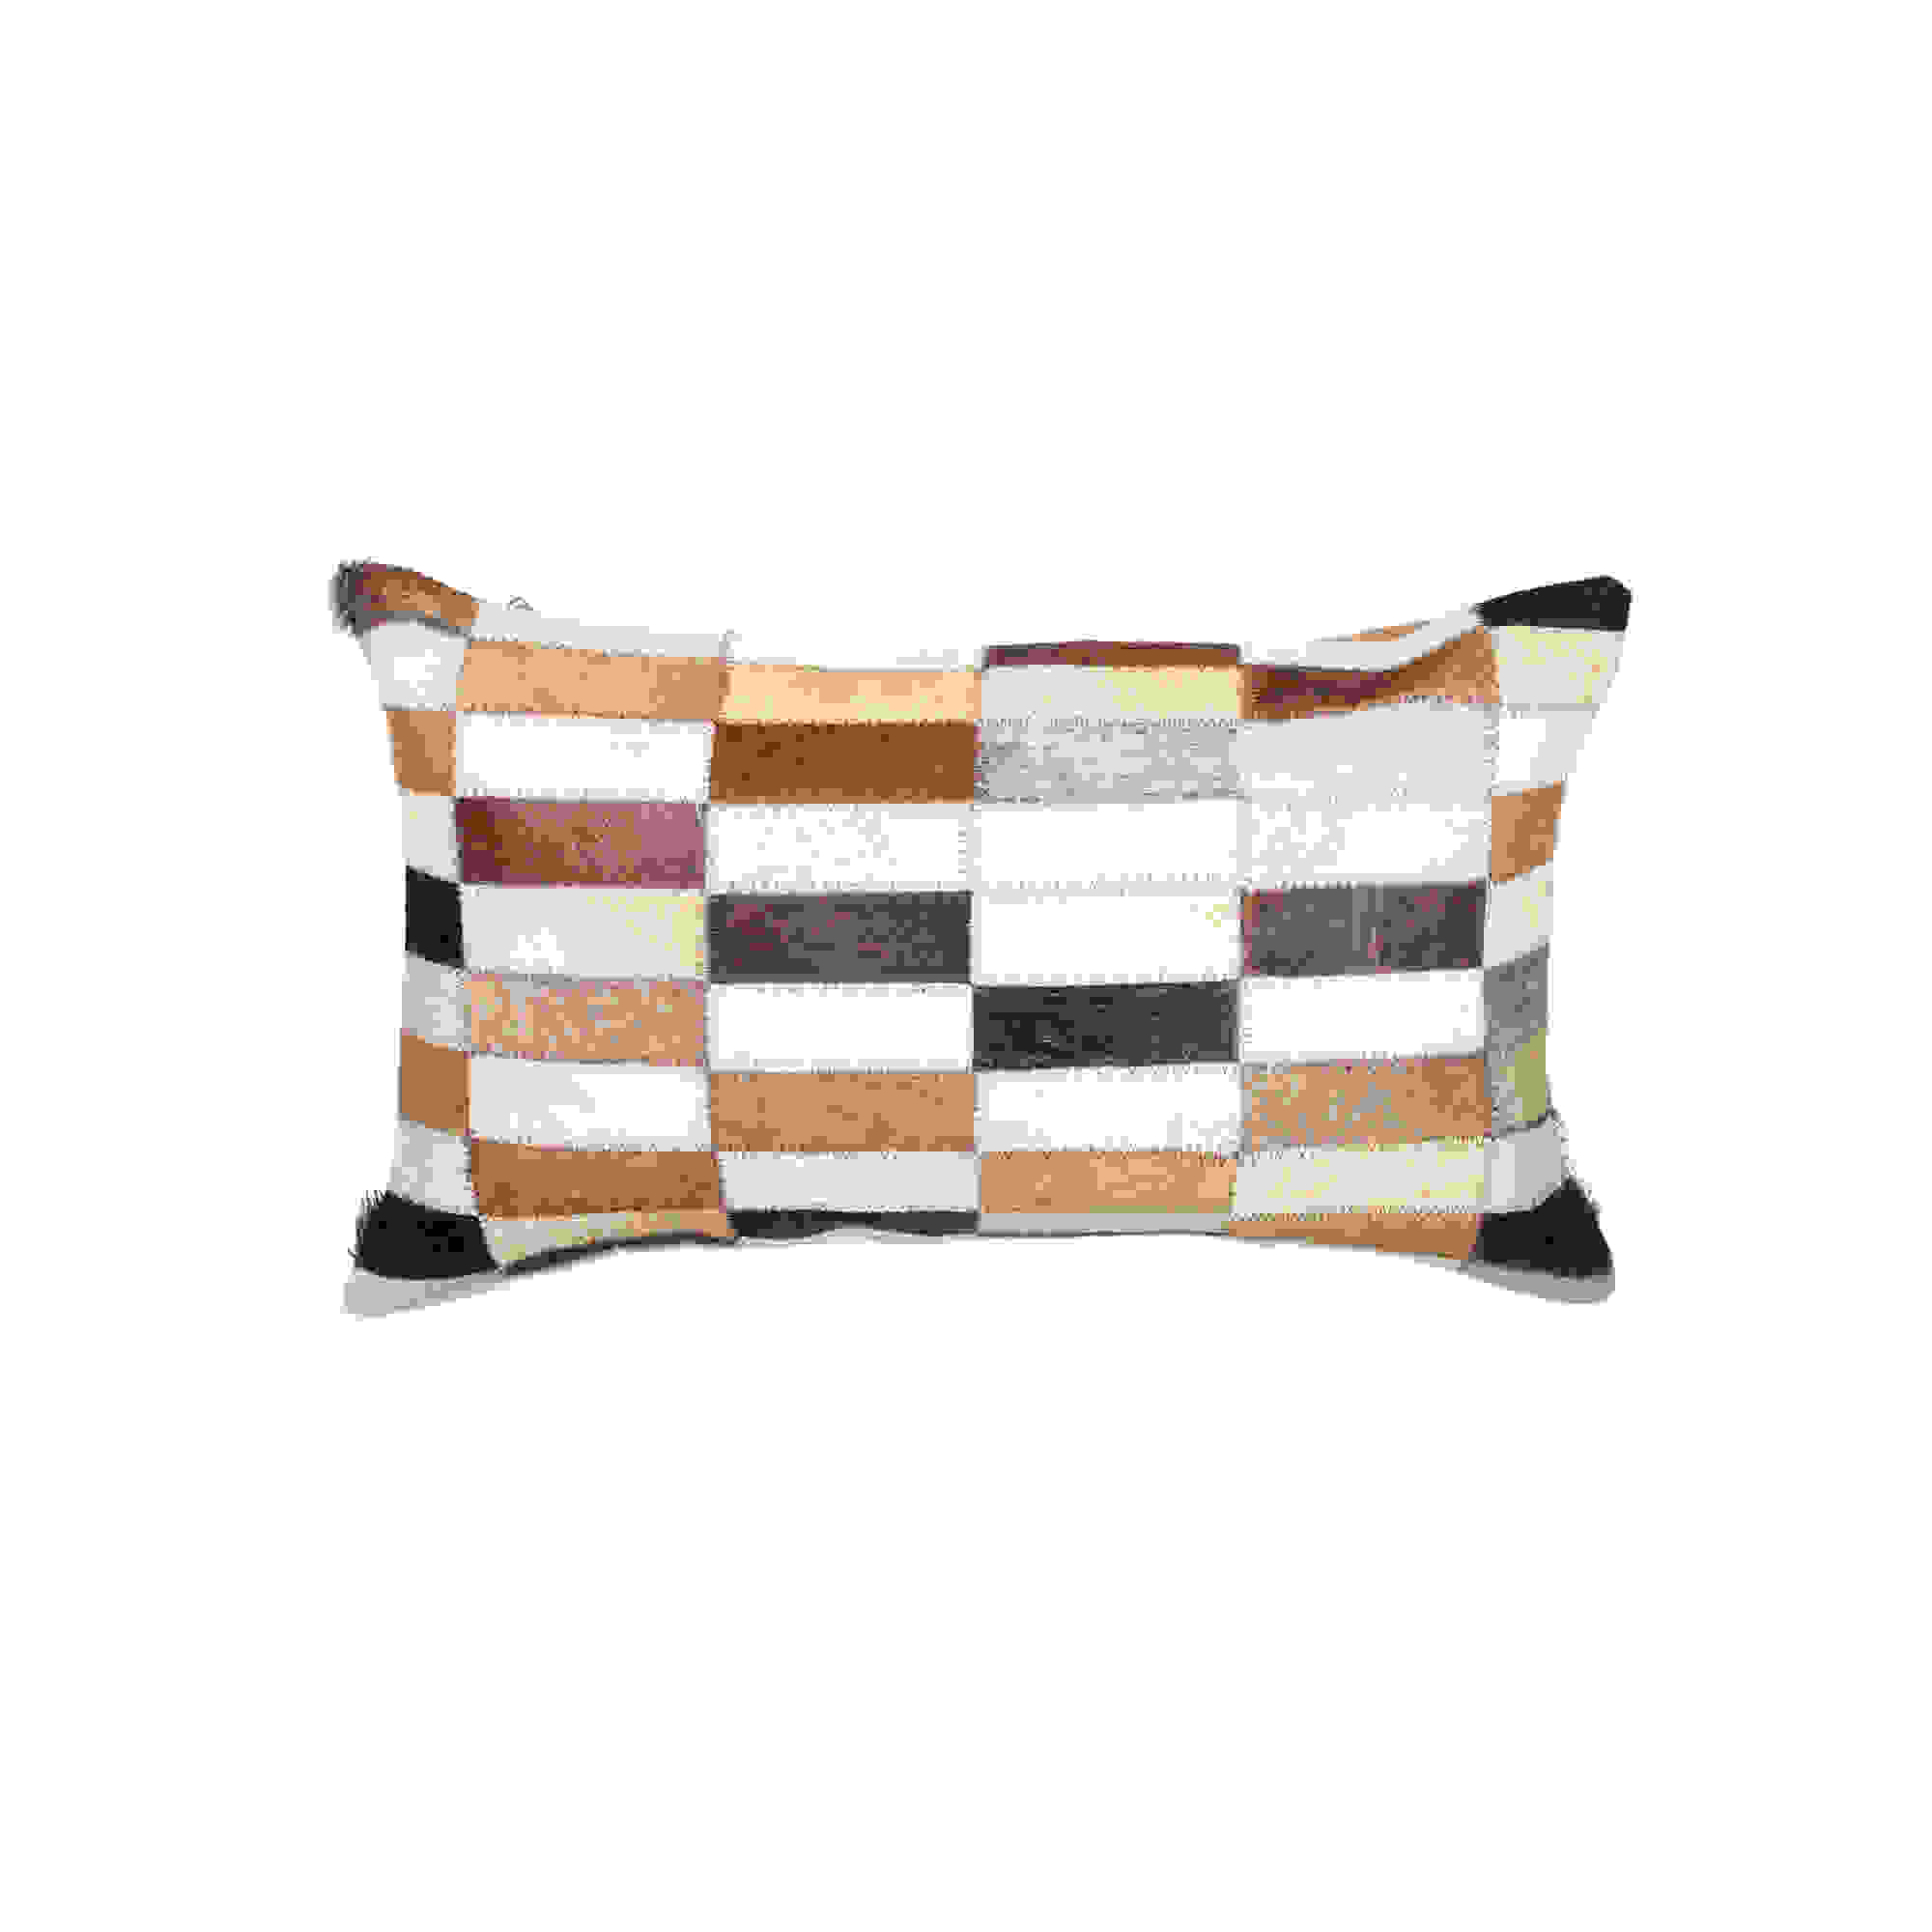 12" x 20" x 5" Tricolor Linear Cowhide - Pillow